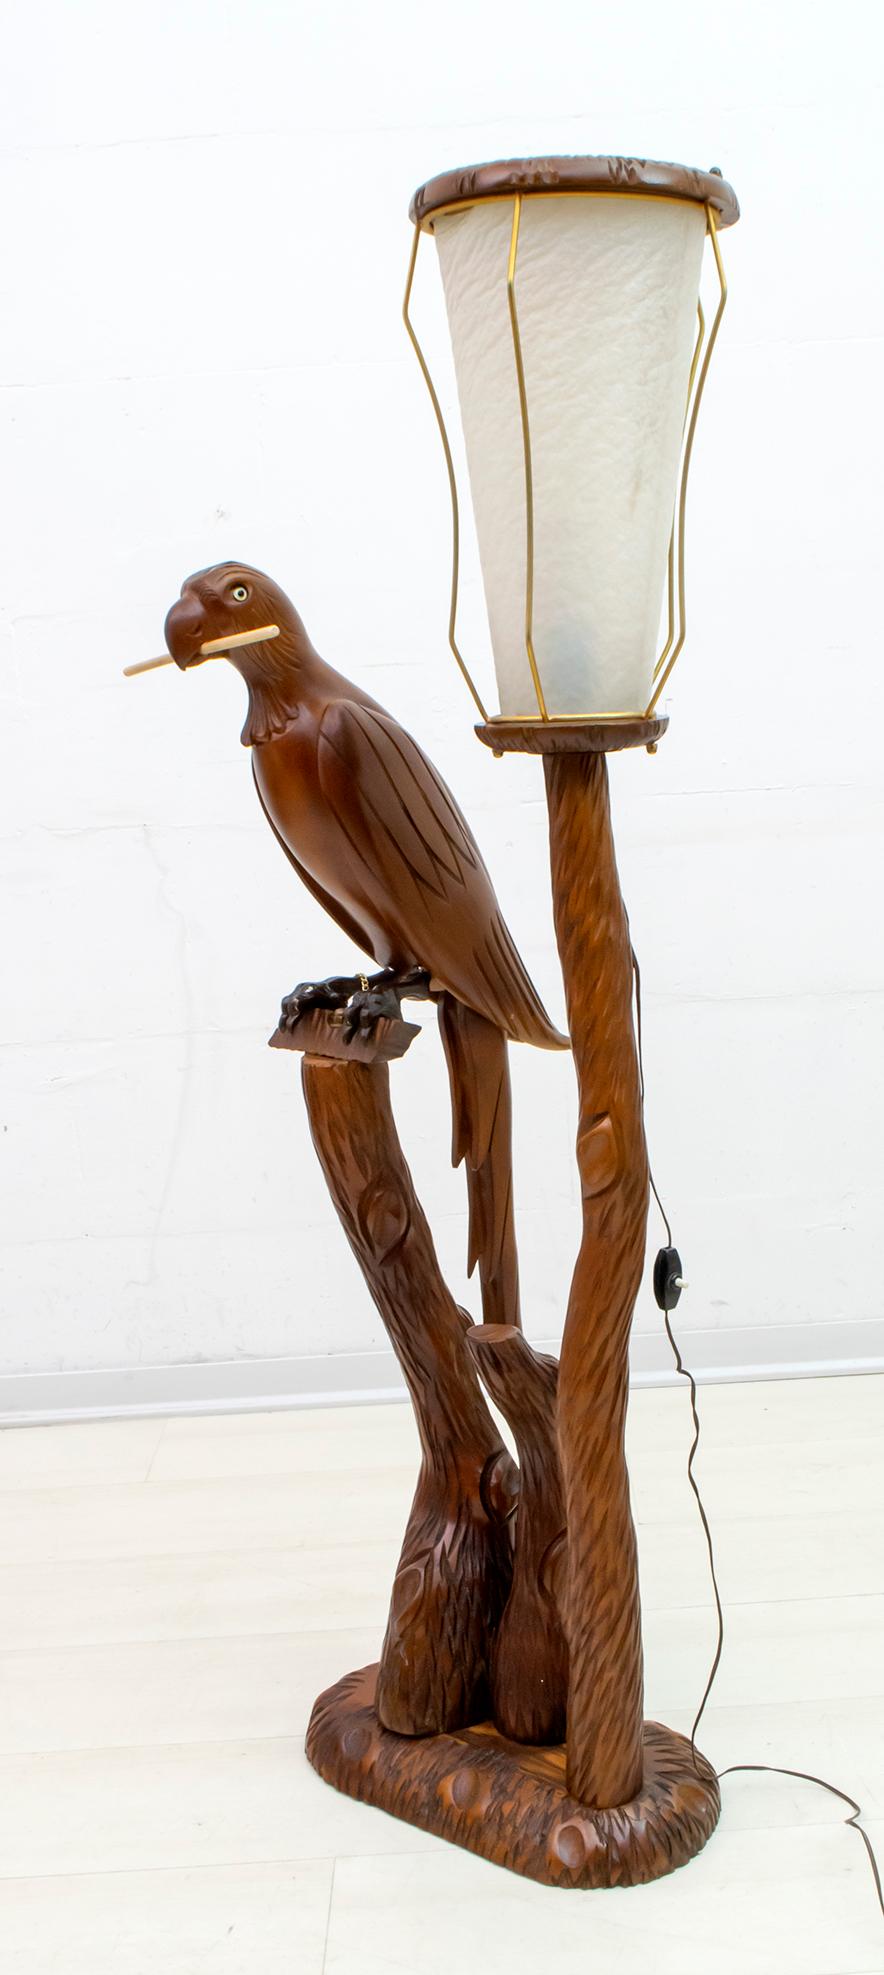 Ce lampadaire en bois sculpté a été conçu par Aldo Tura ; il peut être daté des années 1950. La sculpture en bois représente un perroquet, la lanterne avec des supports en laiton et en peau de chèvre. Cette lampe est en excellent état d'origine.